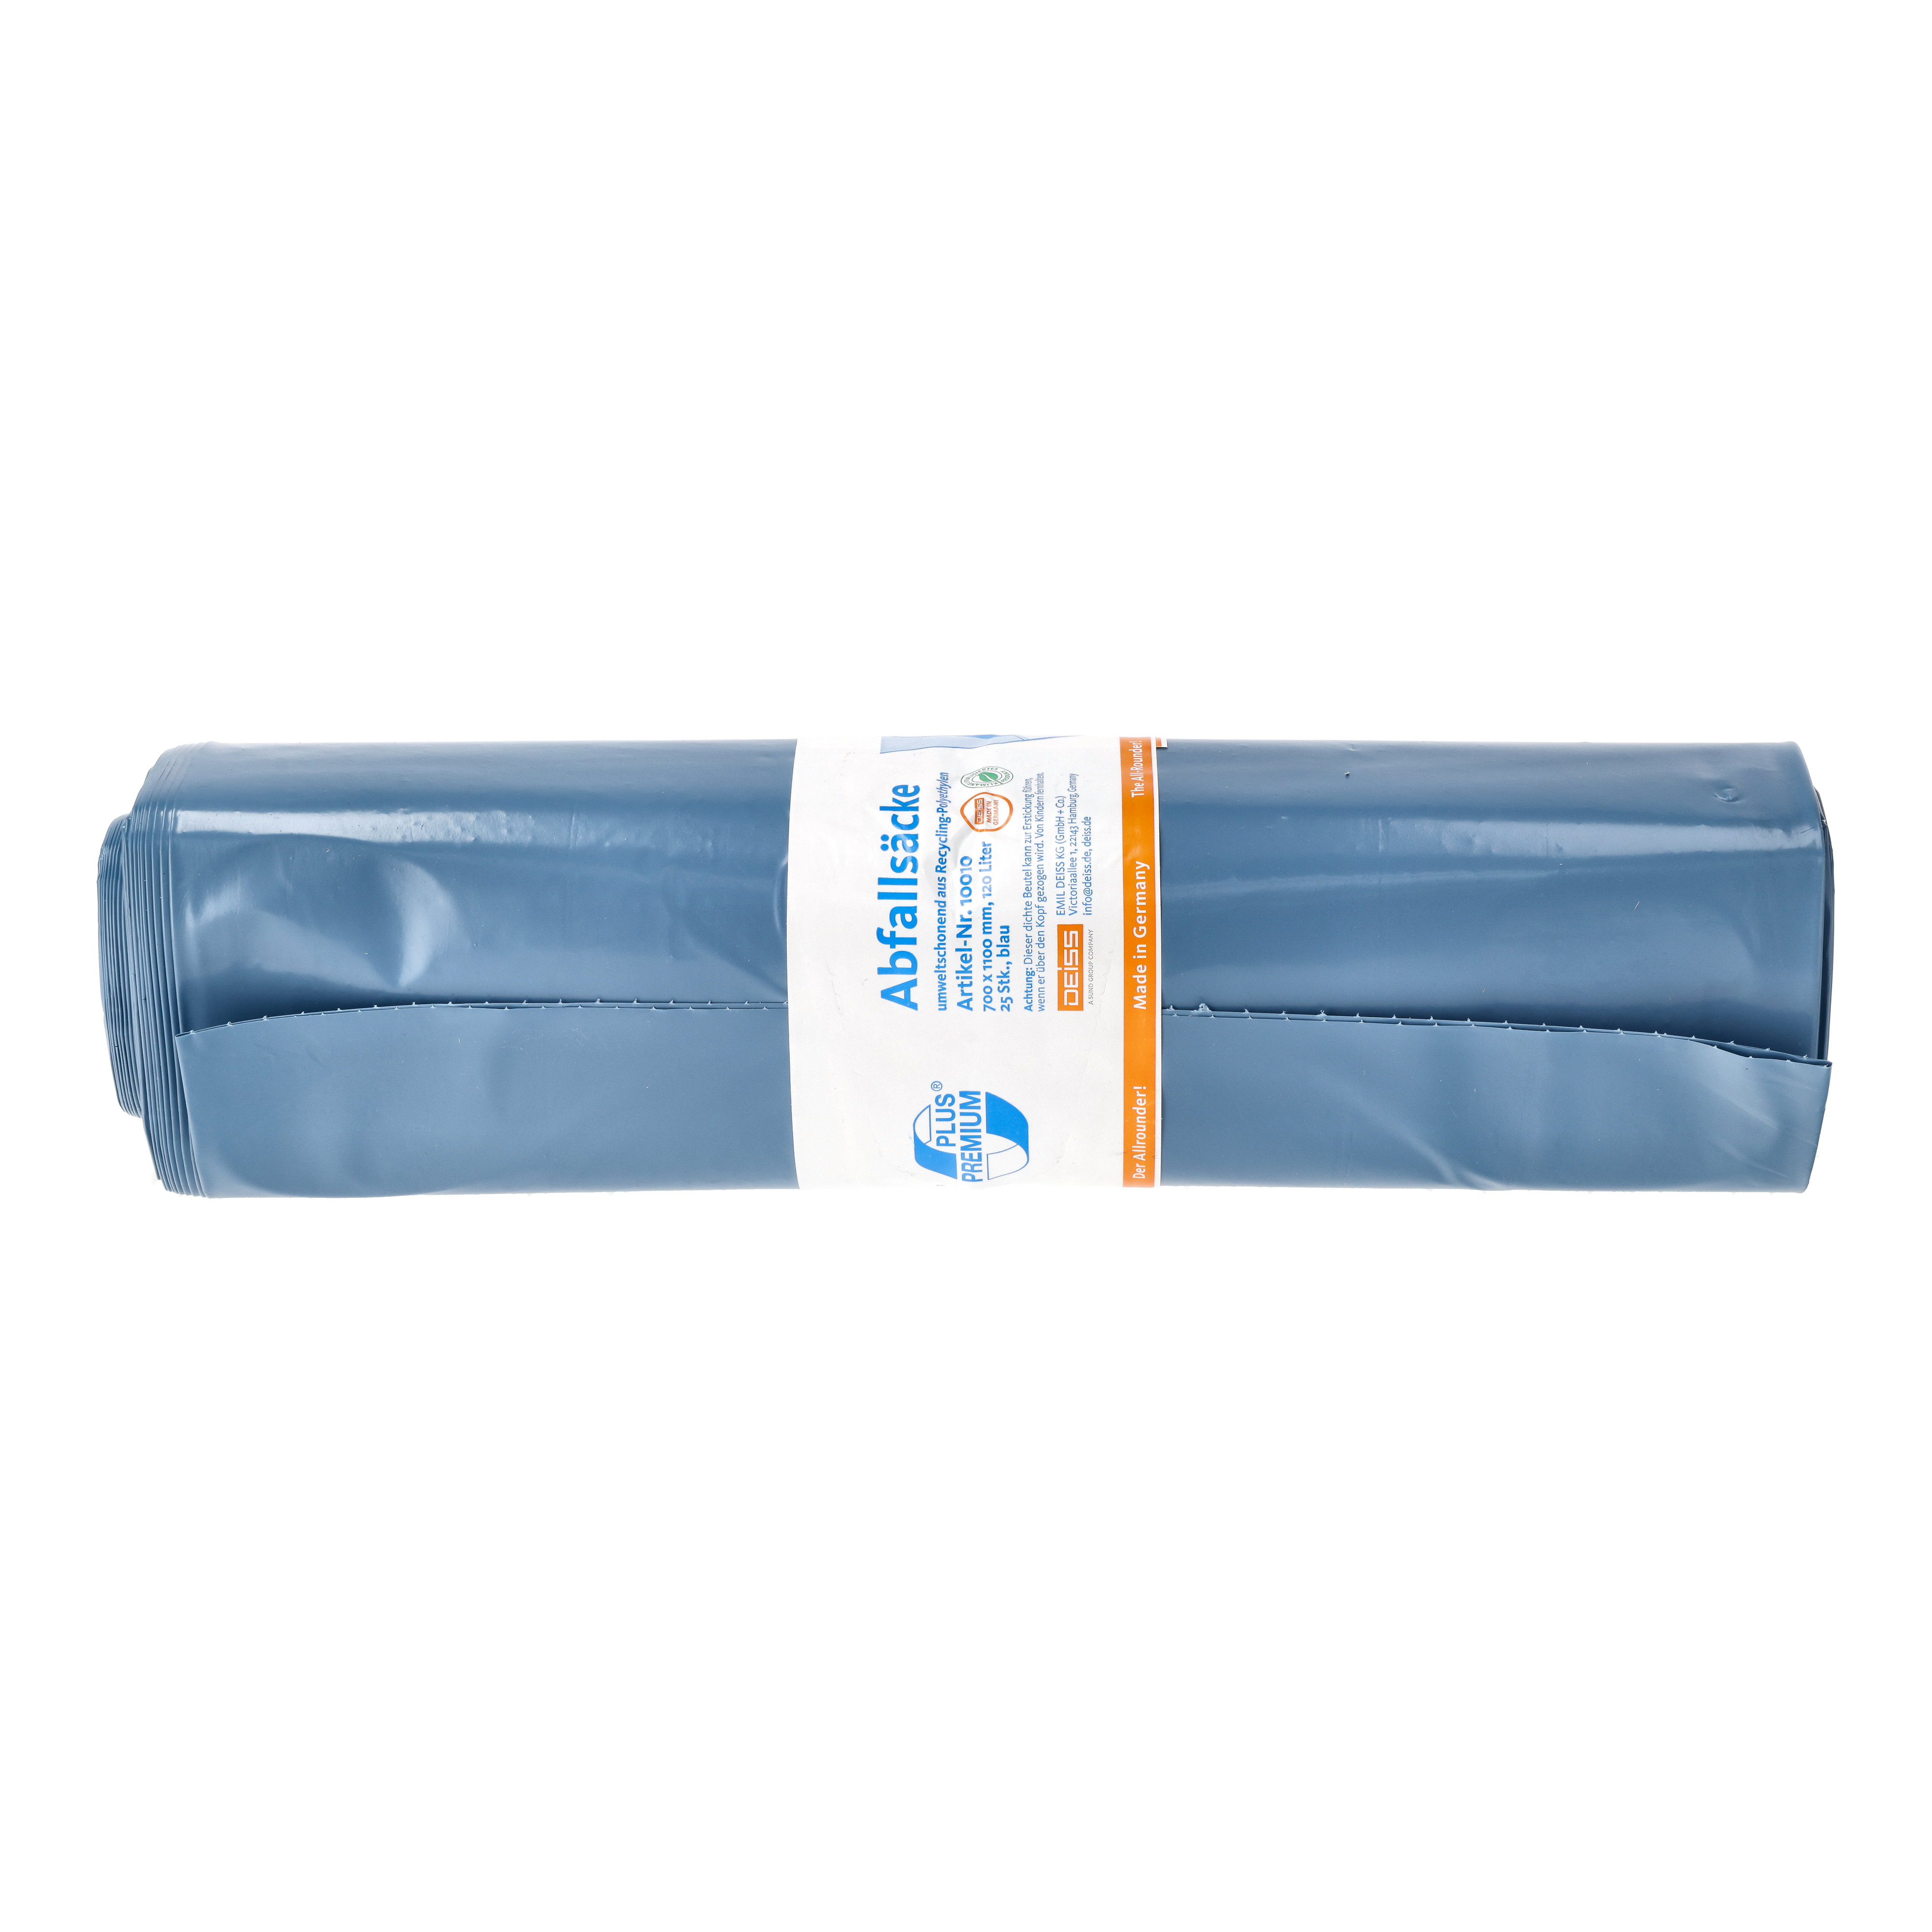 Deiss Premium Plus Abfallsäcke 120 Liter -Der Allrounder- - blau